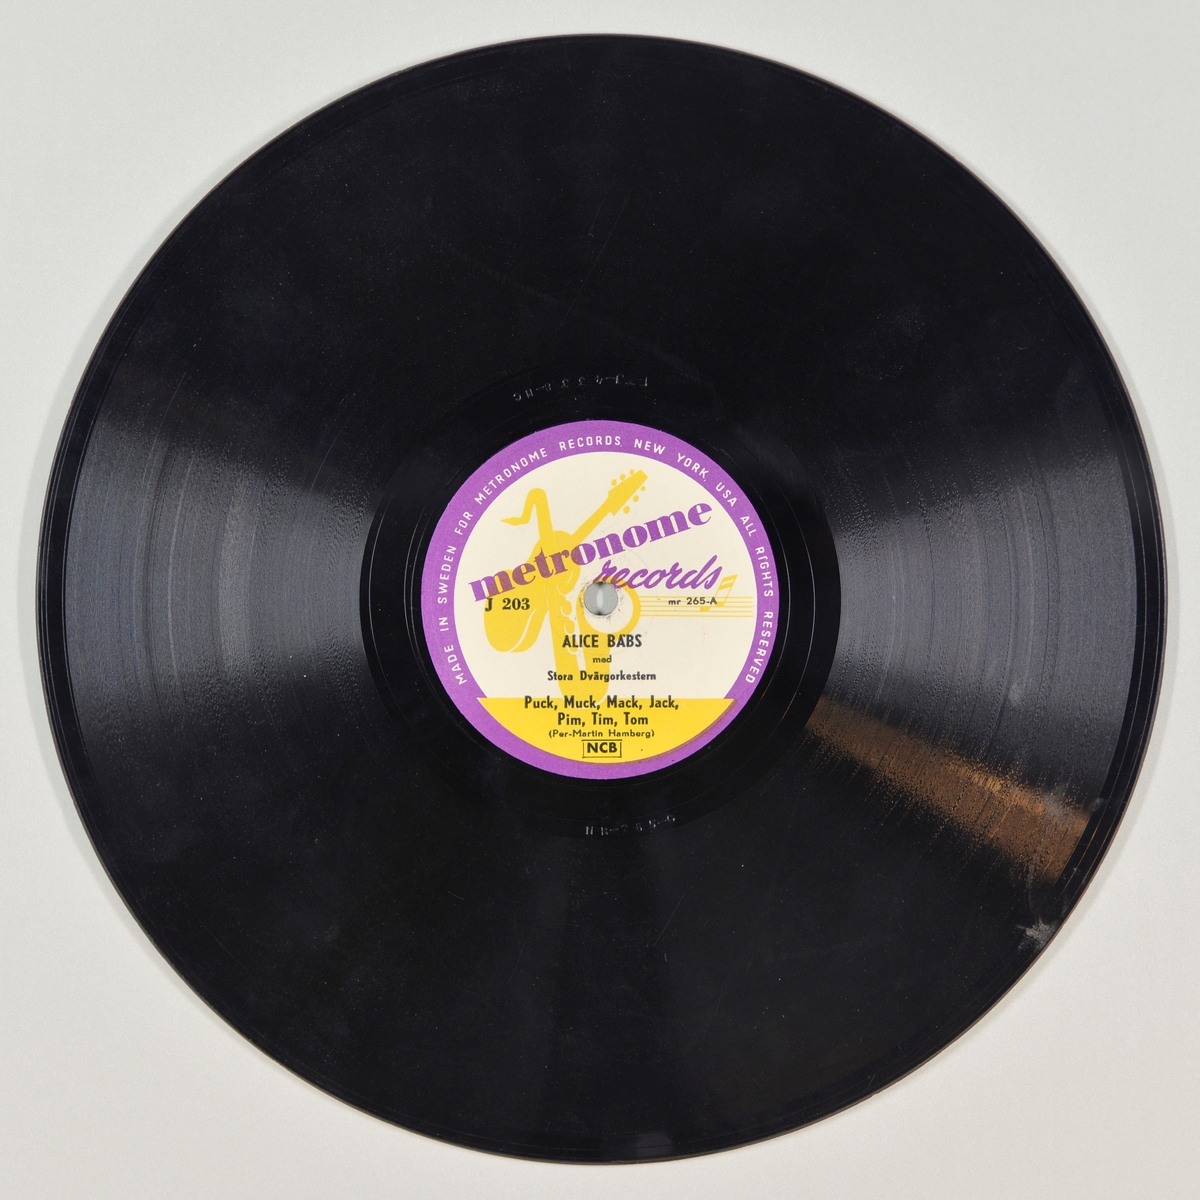 FTT.54207.01:
Svart grammofonplate laget av bakelitt og skjellak. Etiketten er lilla, gul og hvit, for tekst se "Påført tekst/merker". Det er bilde av en gitar, saksofon og en notestripe i gult mot hvit bunn og lilla innramming. 

FTT.54207.02:
Plateomslaget til platen er laget av brunt papp med trykk. På forsiden er det bilde av et dansende par (svarthvit tegning), for tekst se "Påført tekst/merker". På baksiden er det informasjon om utsalgssteder i Malmø.